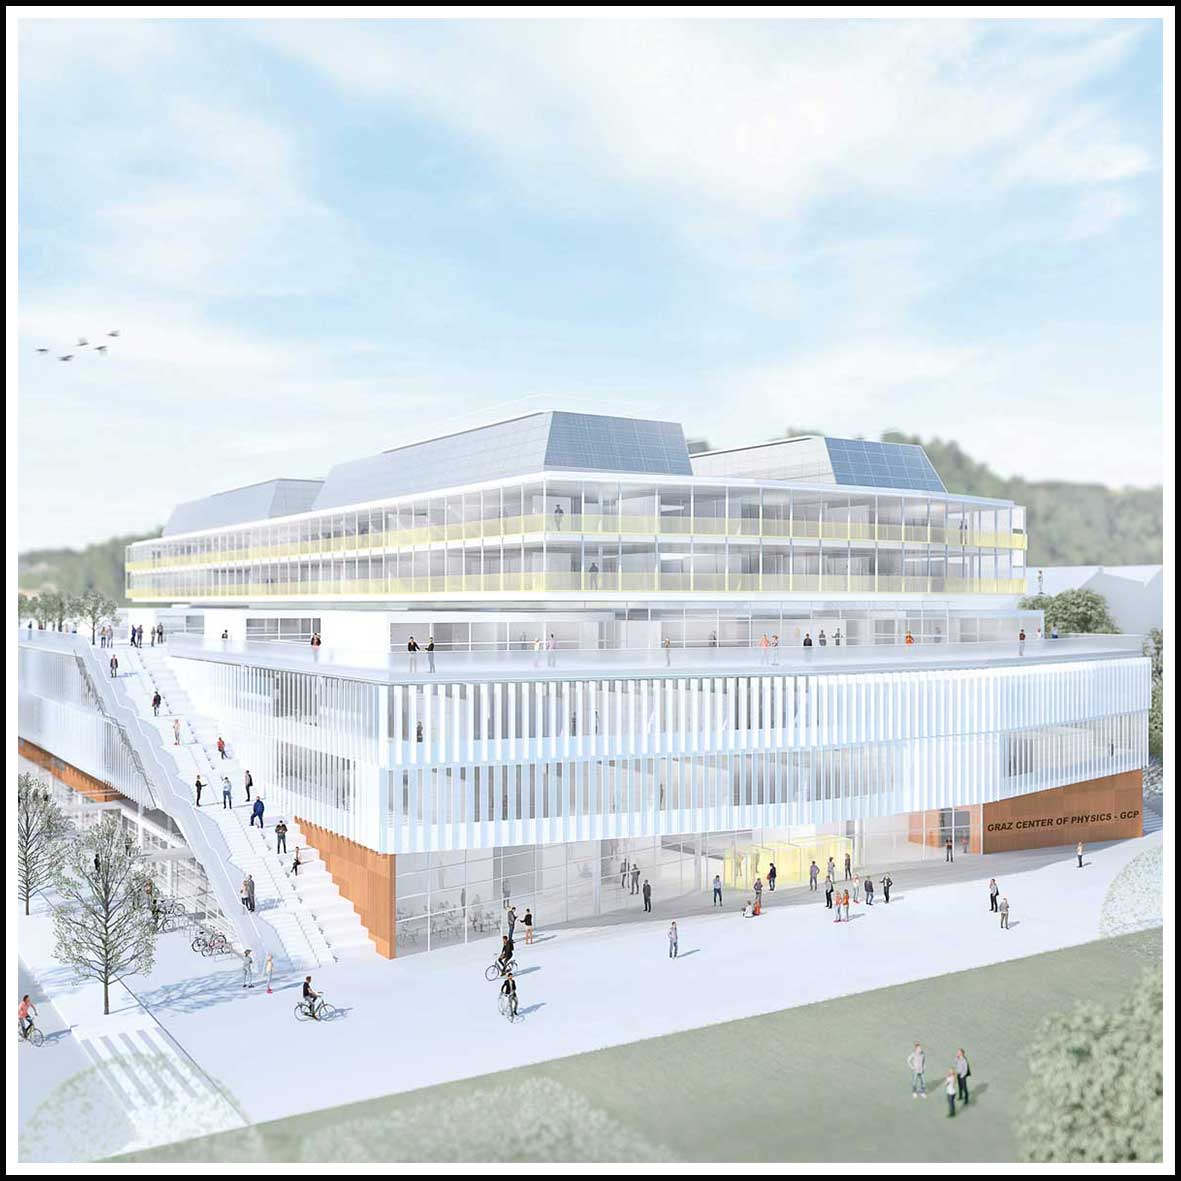 Modell eines sechsstöckigen Gebäudes, darüber blauer Himmel. Bildquelle: Aberjung GmbH